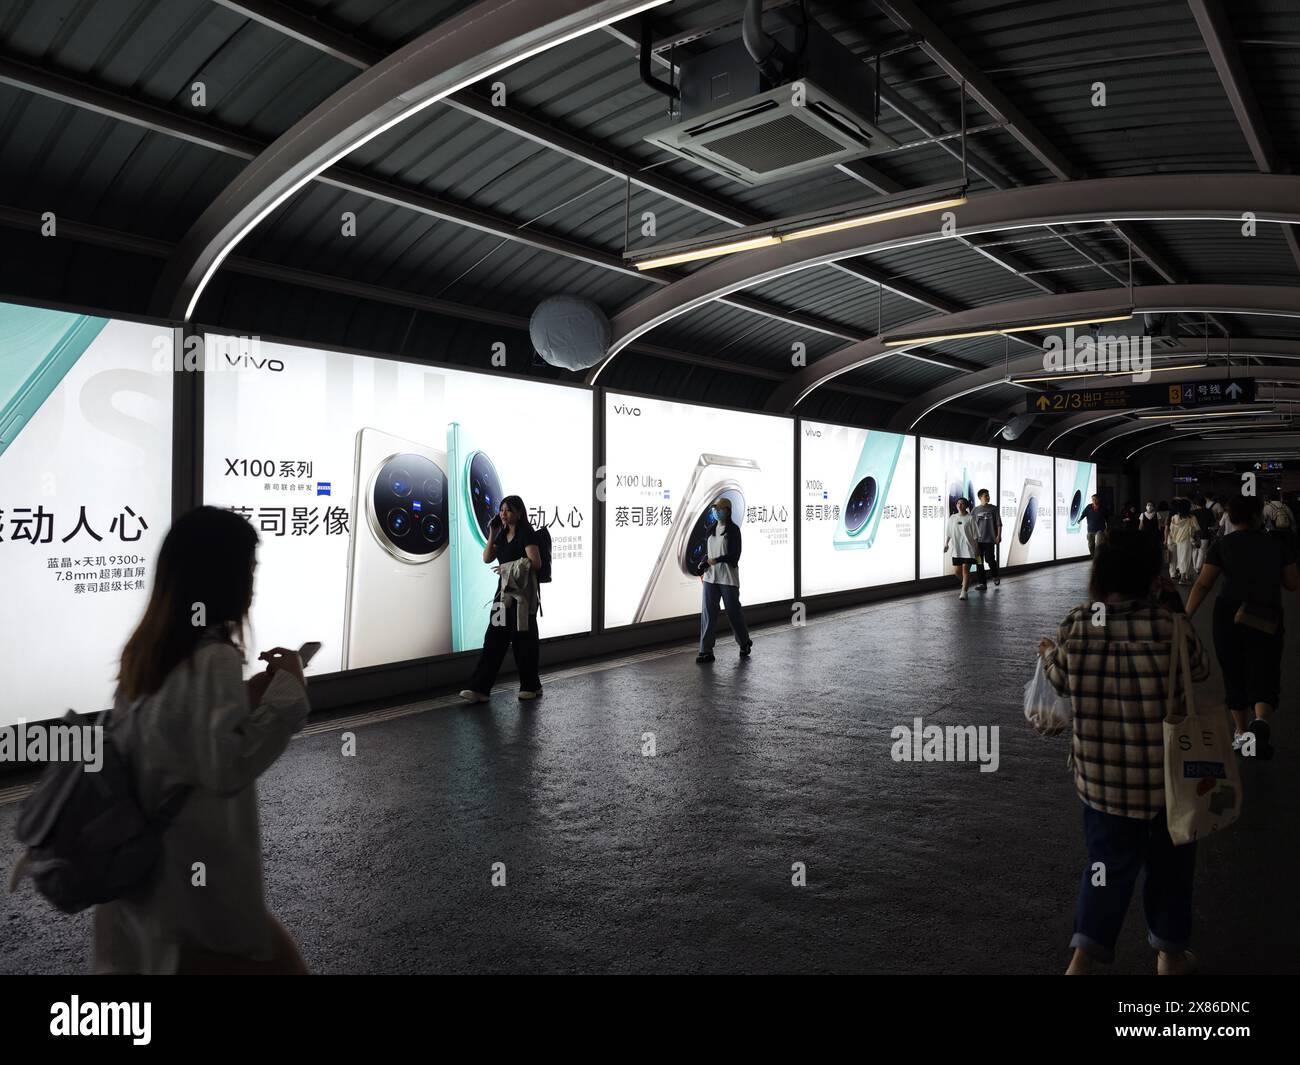 Vivo X100 Smartphone mit Zeiss Objektiv Lightbox Werbung auf U-Bahn-Station Gehweg in Shanghai, China Stockfoto